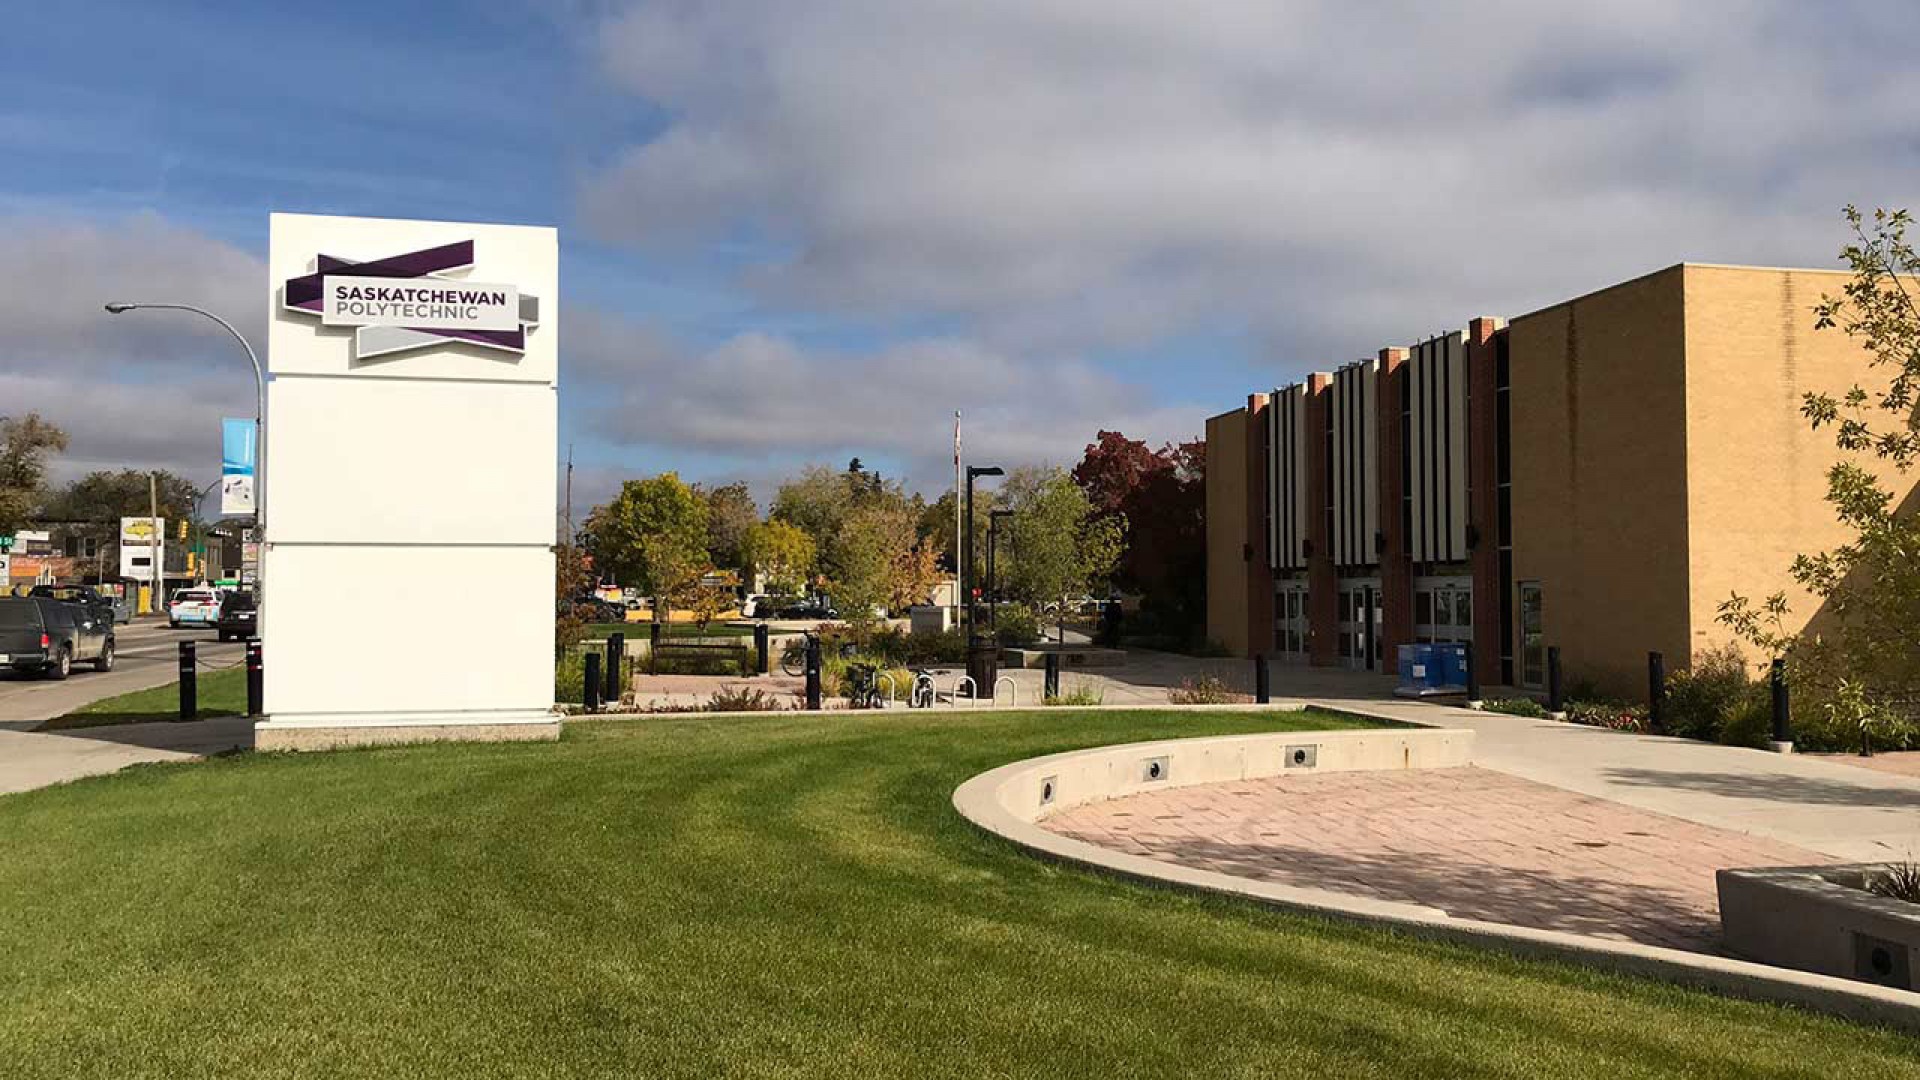 Đi du học Canada ngành Kỹ thuật, có nên chọn trường Saskatchewan Polytechnic?